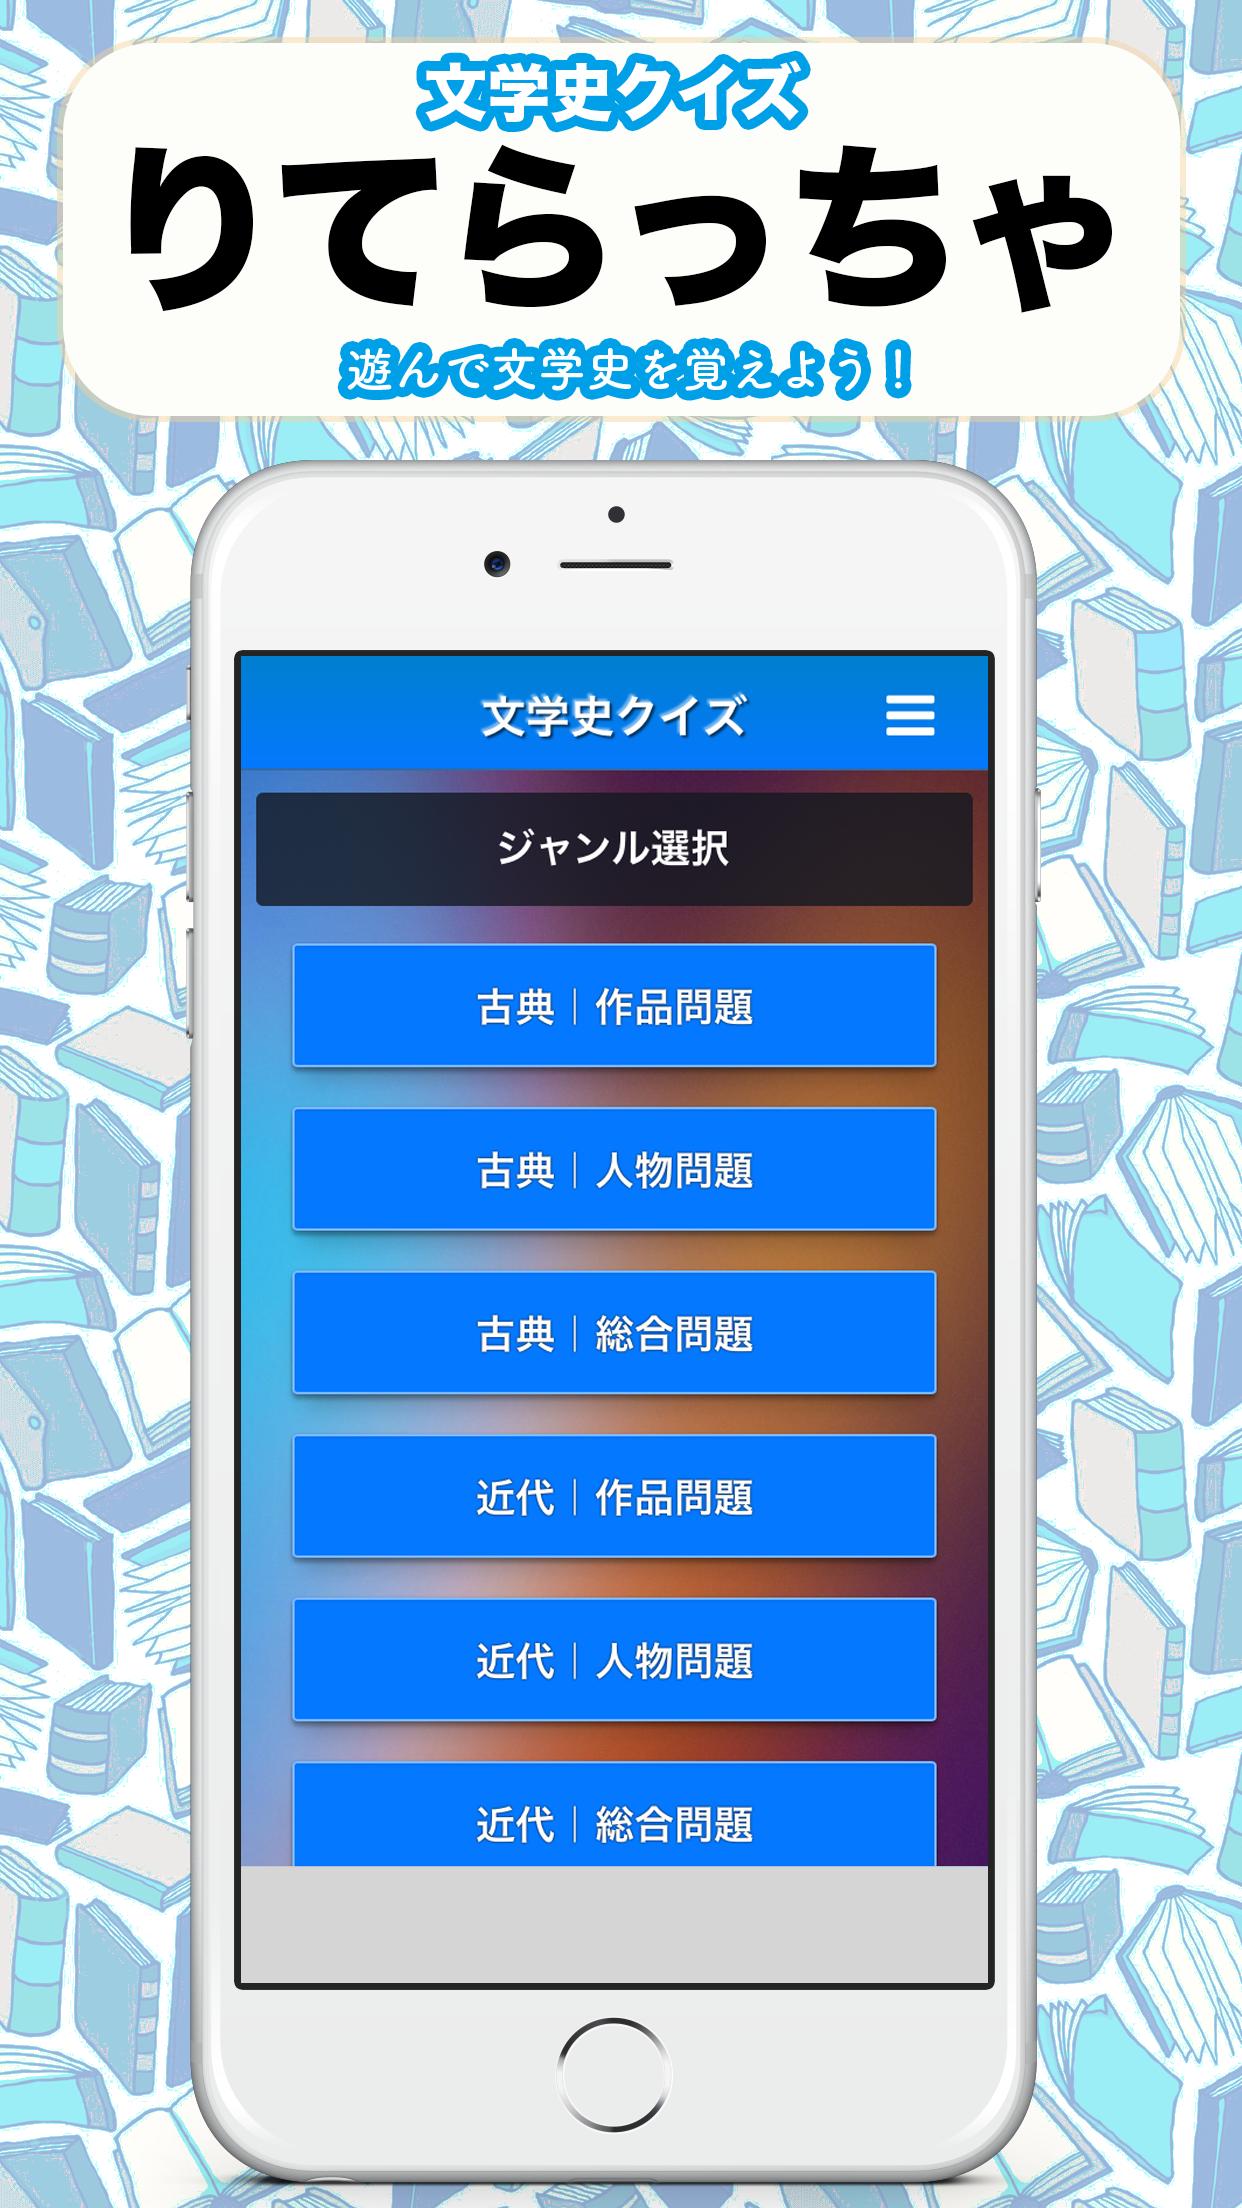 りてらっちゃ2 奈良 近世 現代までの文学史クイズ For Android Apk Download